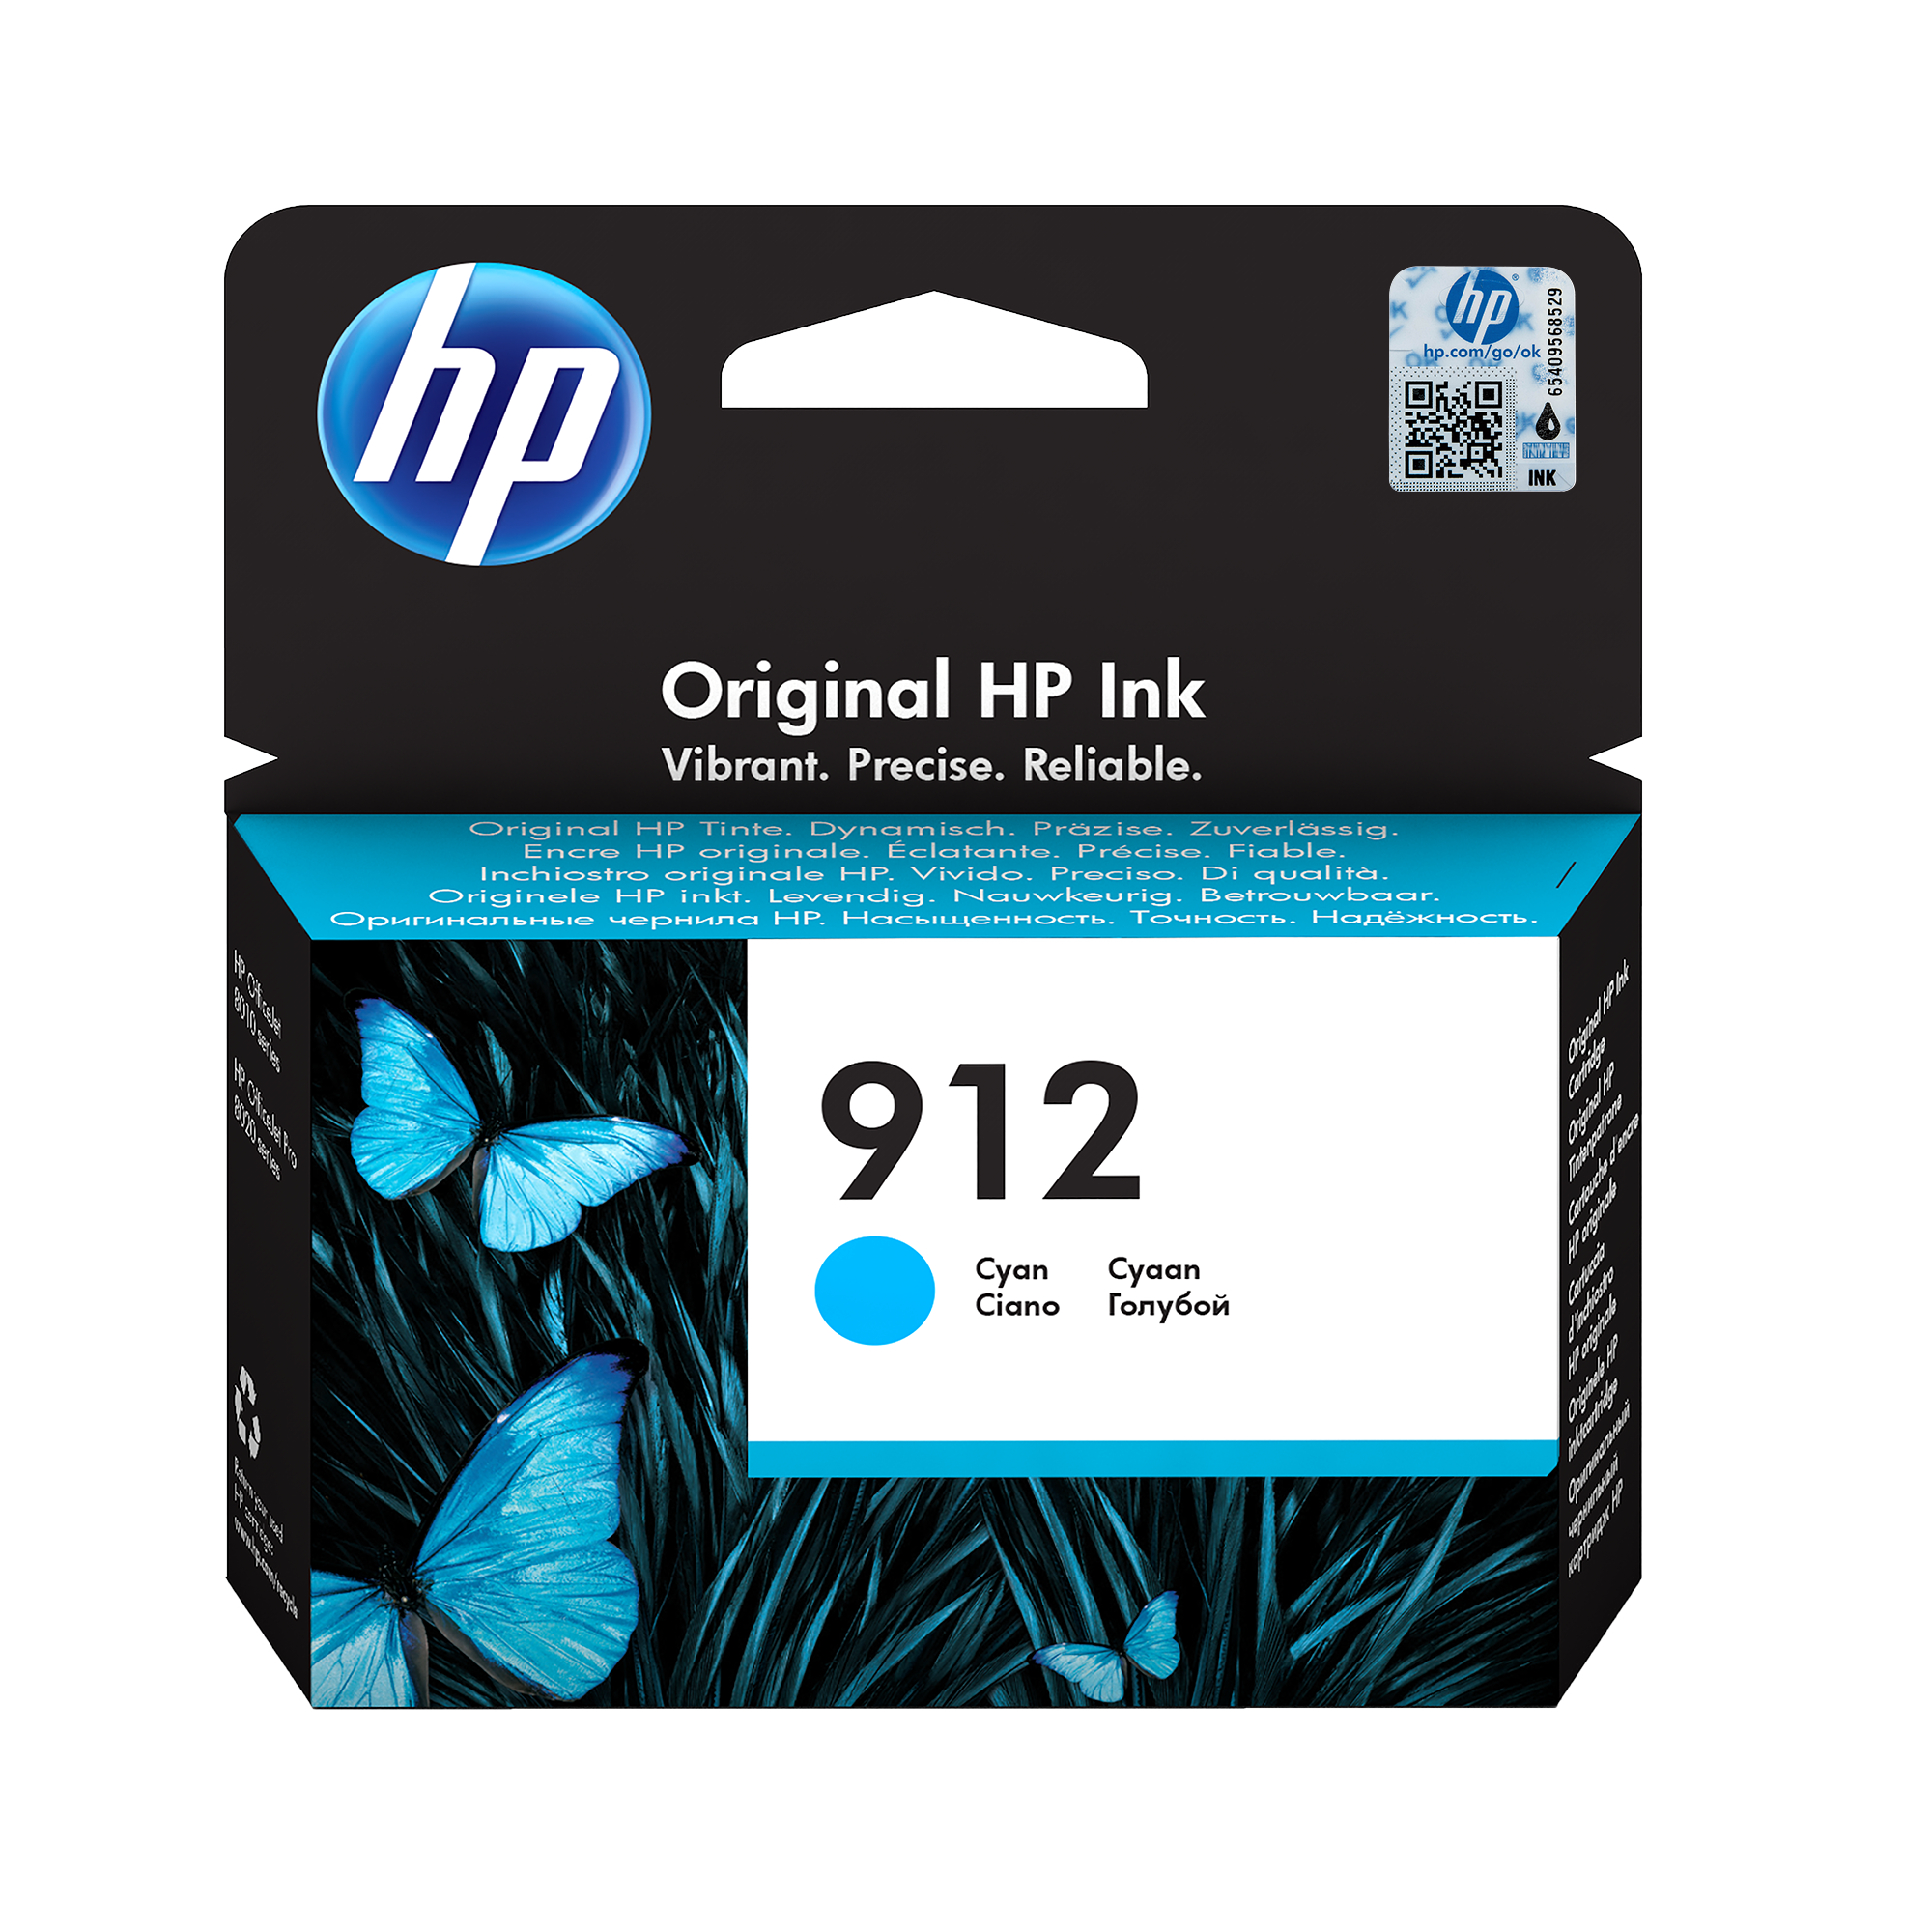 HP 912 single pack / cyaan